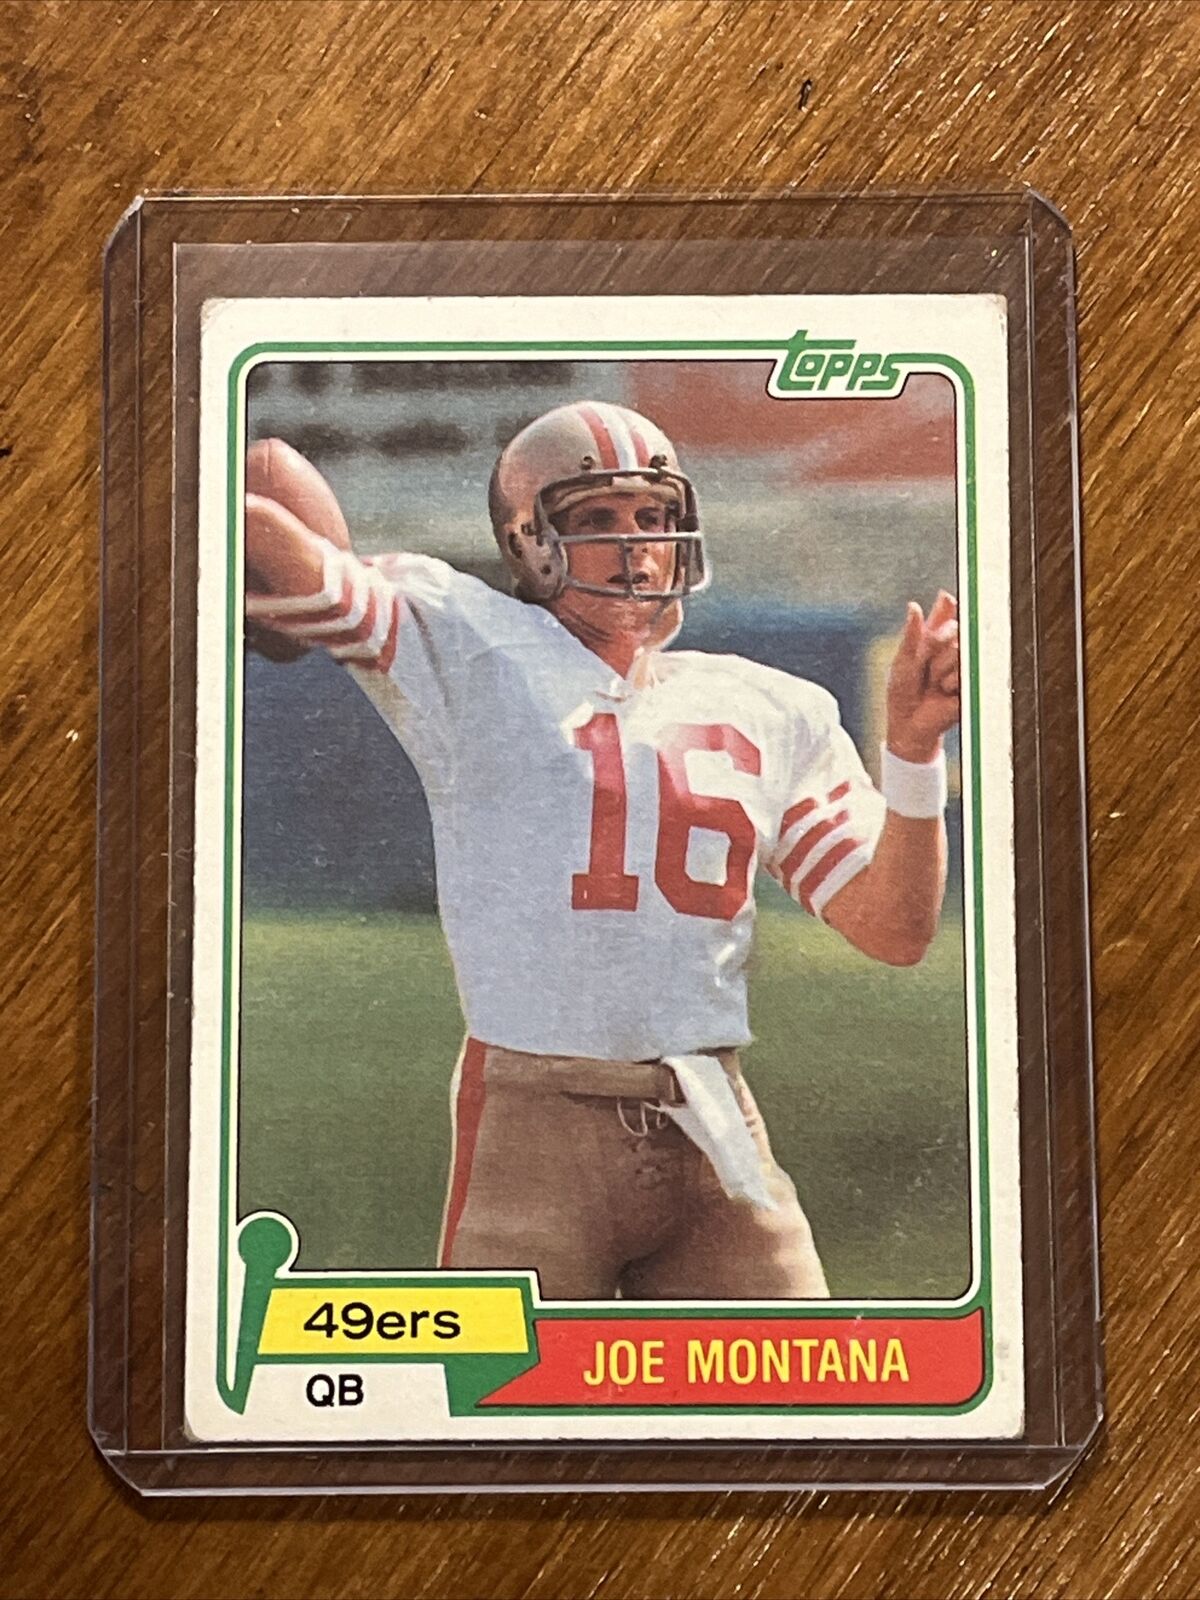 Joe Montana rookie card